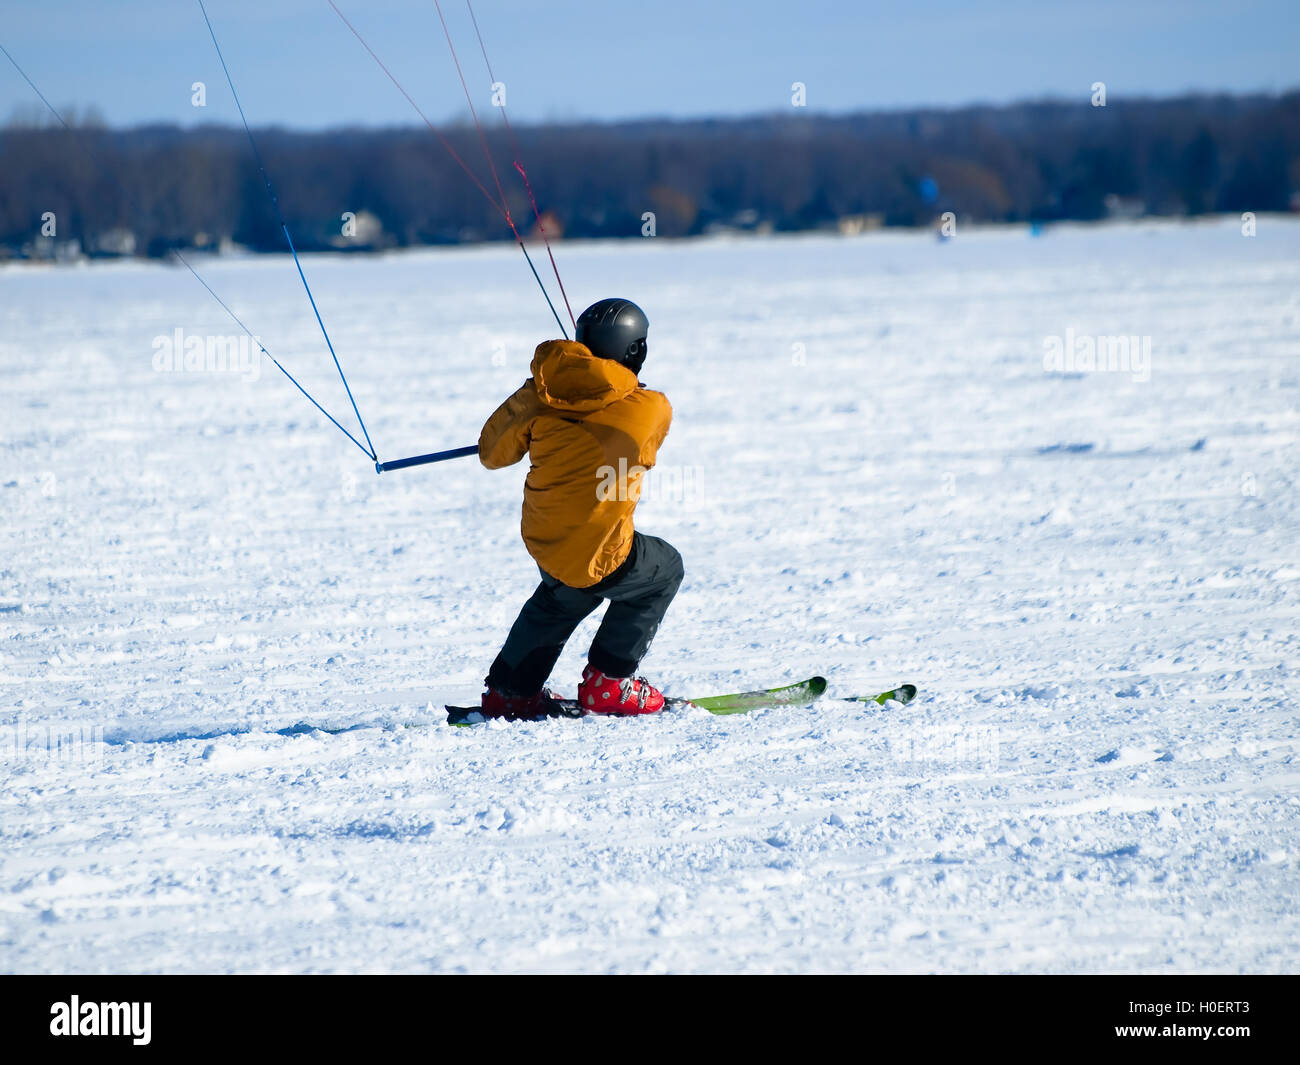 Men ski kiting on a frozen lake Stock Photo